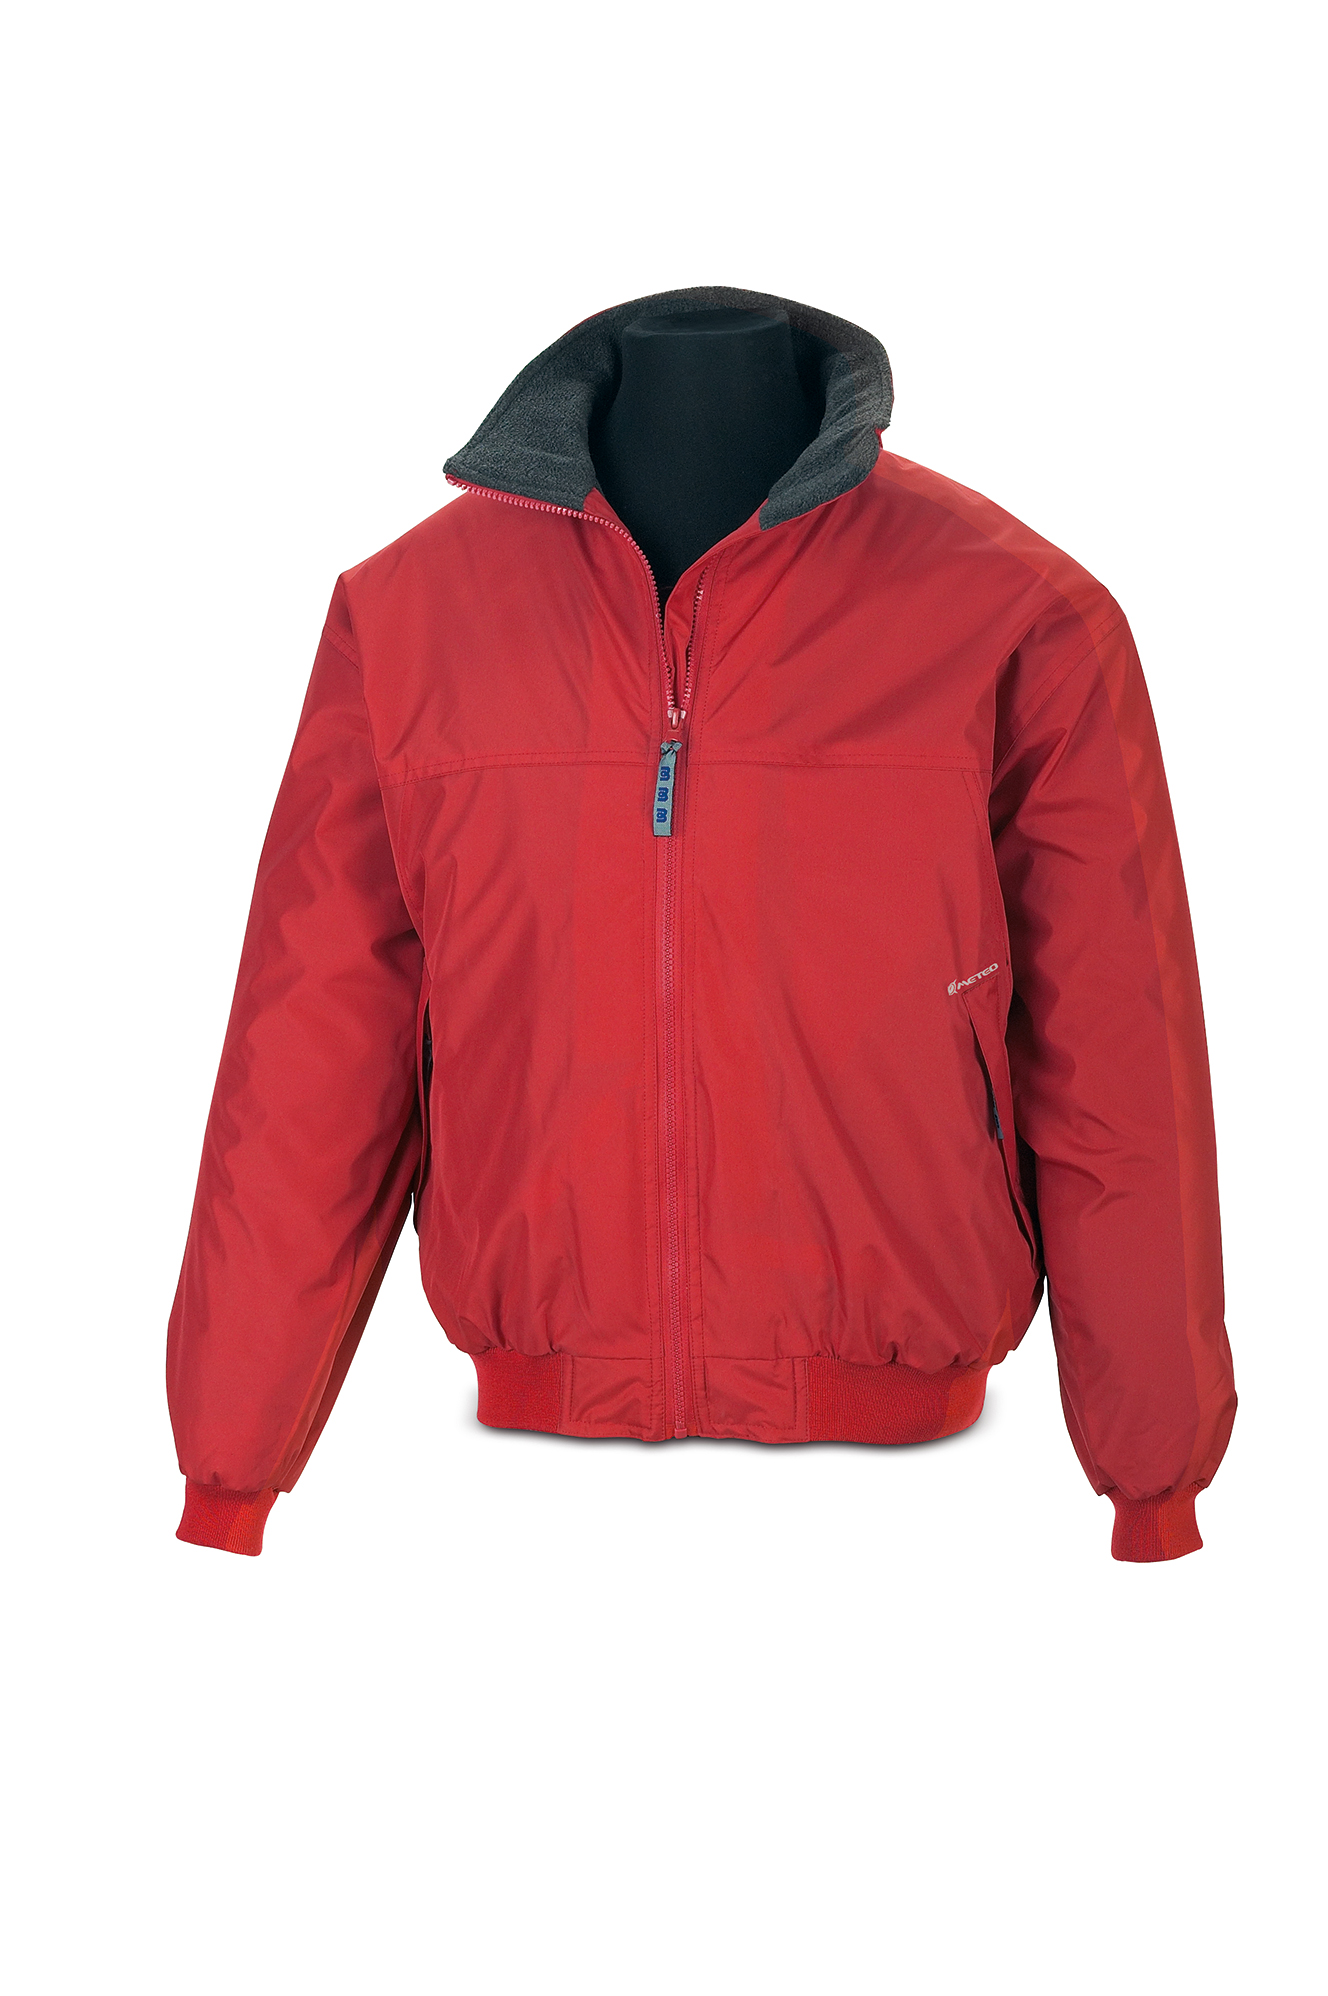 288-CPR Proteção e chuva Blusão Blusão NÁUTICA. Cor vermelho.